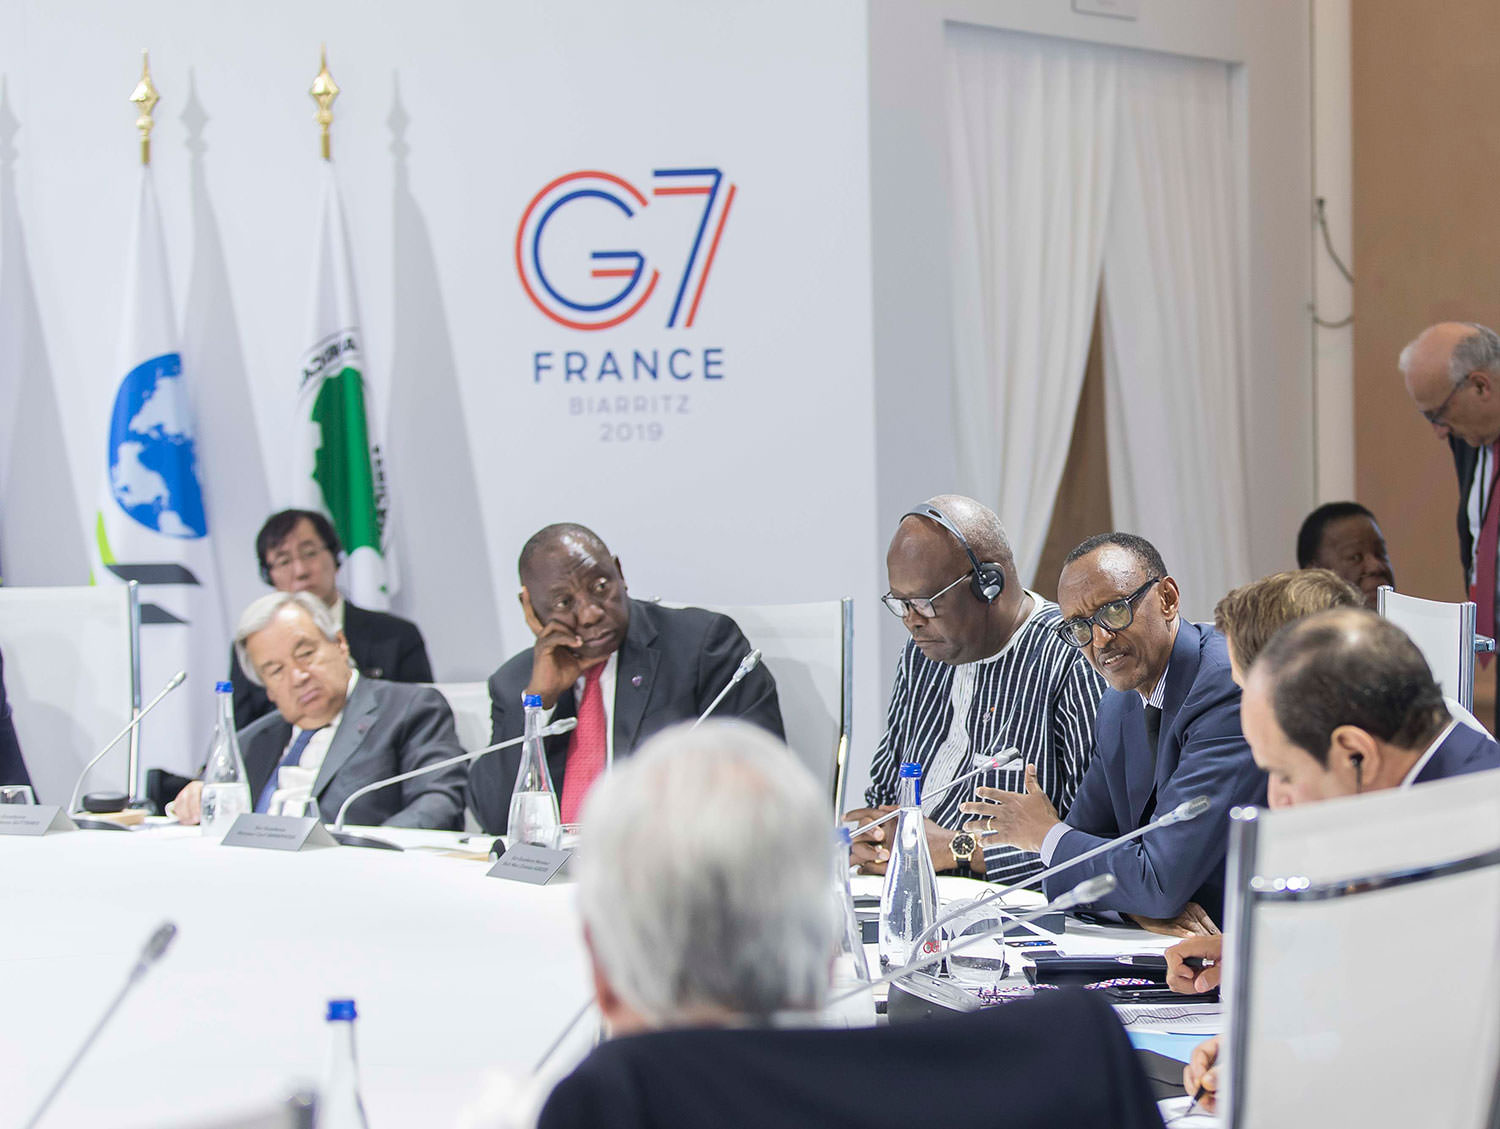 45th G7 Summit | Biarritz, 25-26 August, 2019